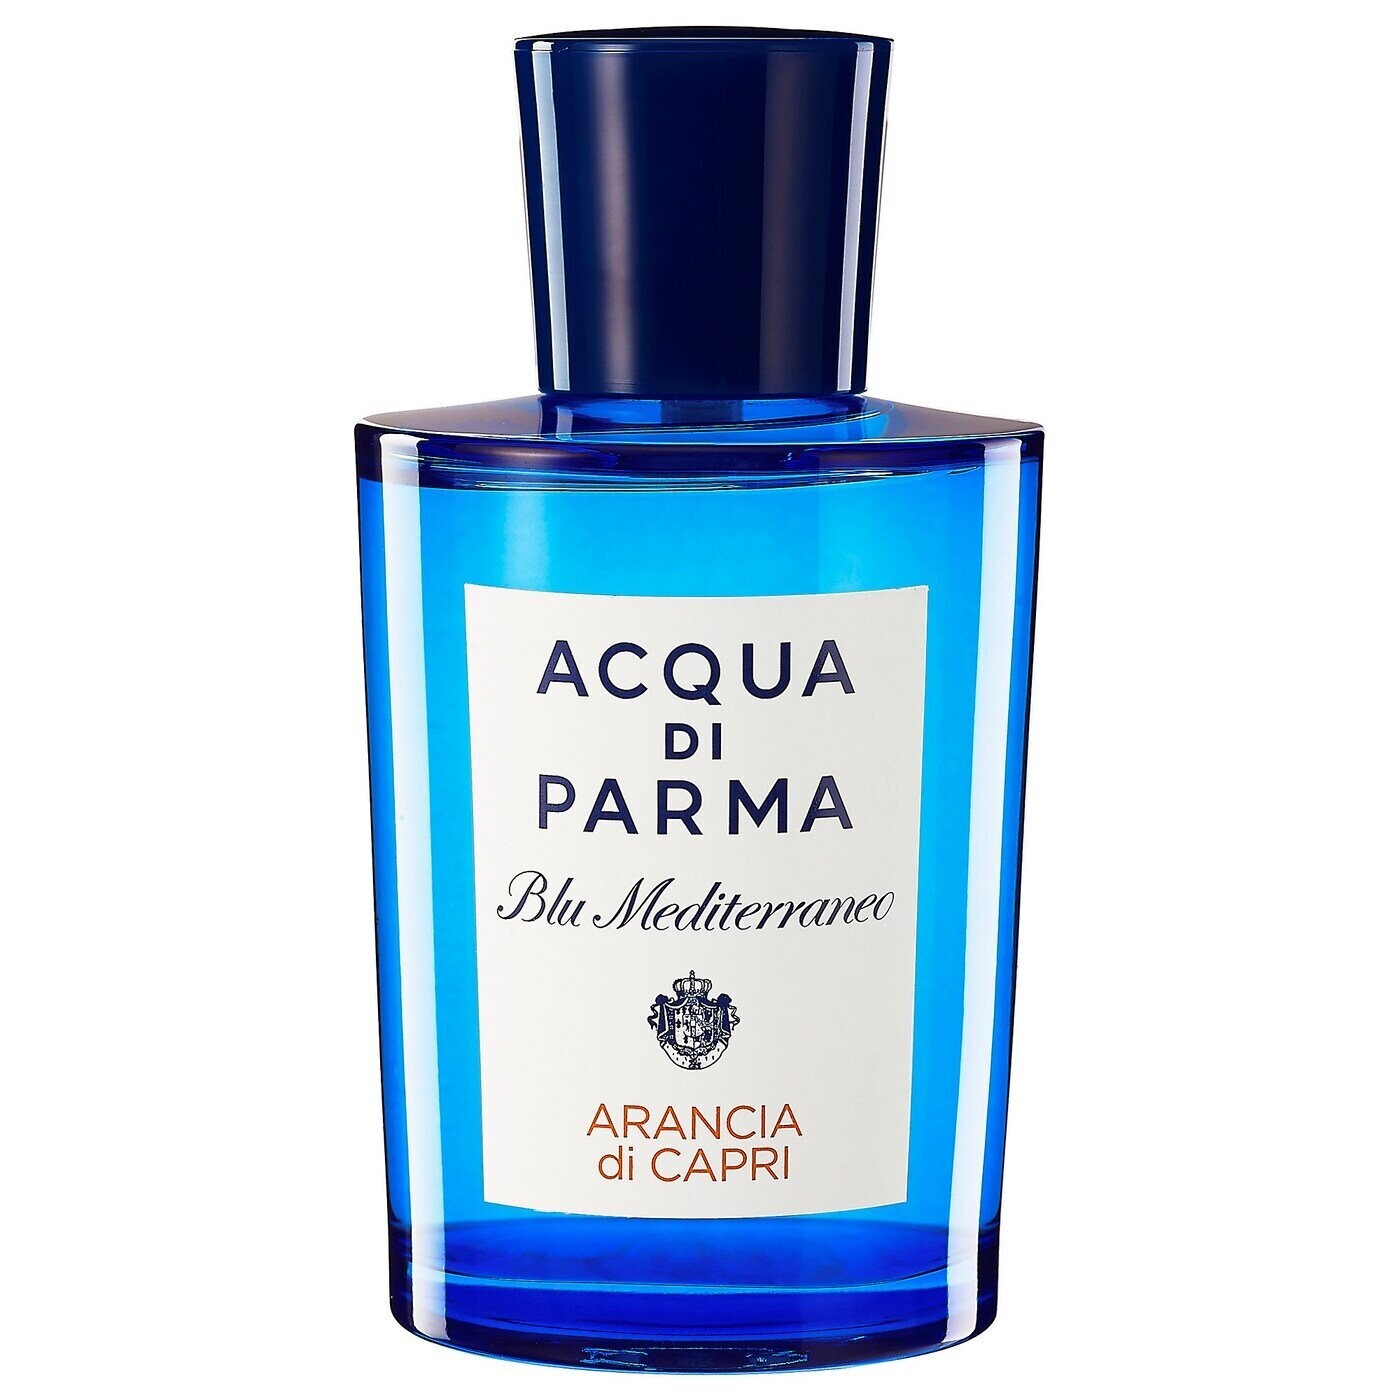 Acqua di Parma Arancia di Capri Eau de Toilette Spray 150ml